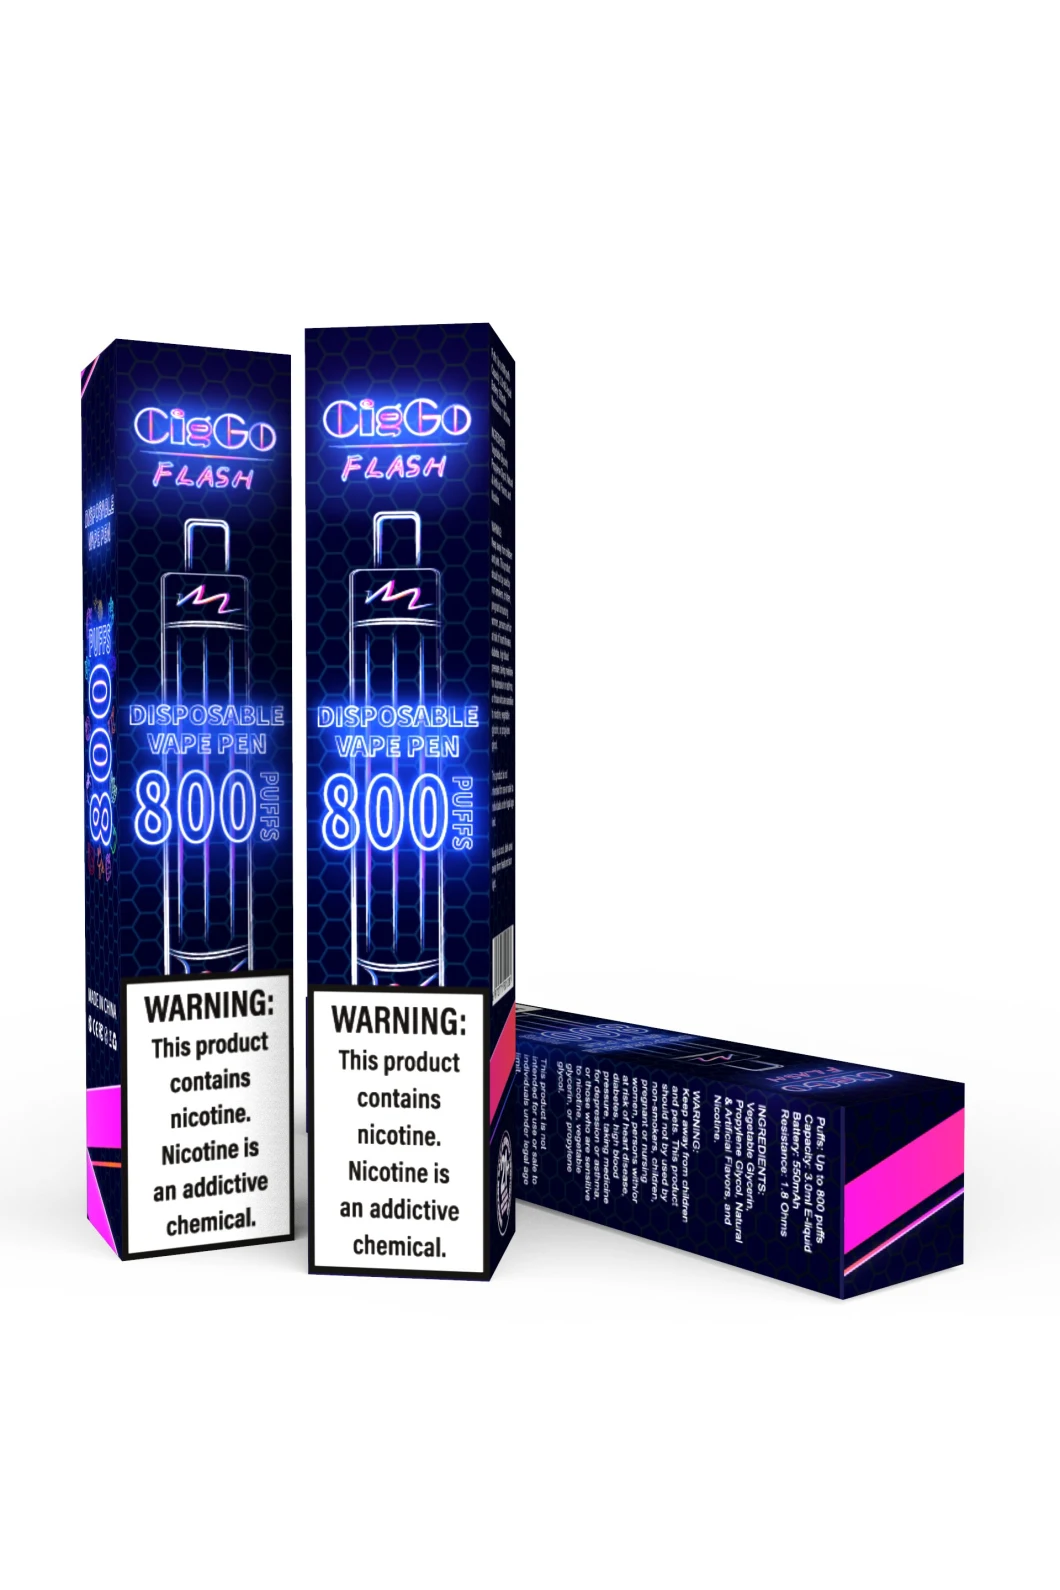 Venta al por mayor de cigarrillos electrónicos Fábrica 800 inhalaciones 50 mg Nic Salt 3 ml Flash Lighting Vape desechable